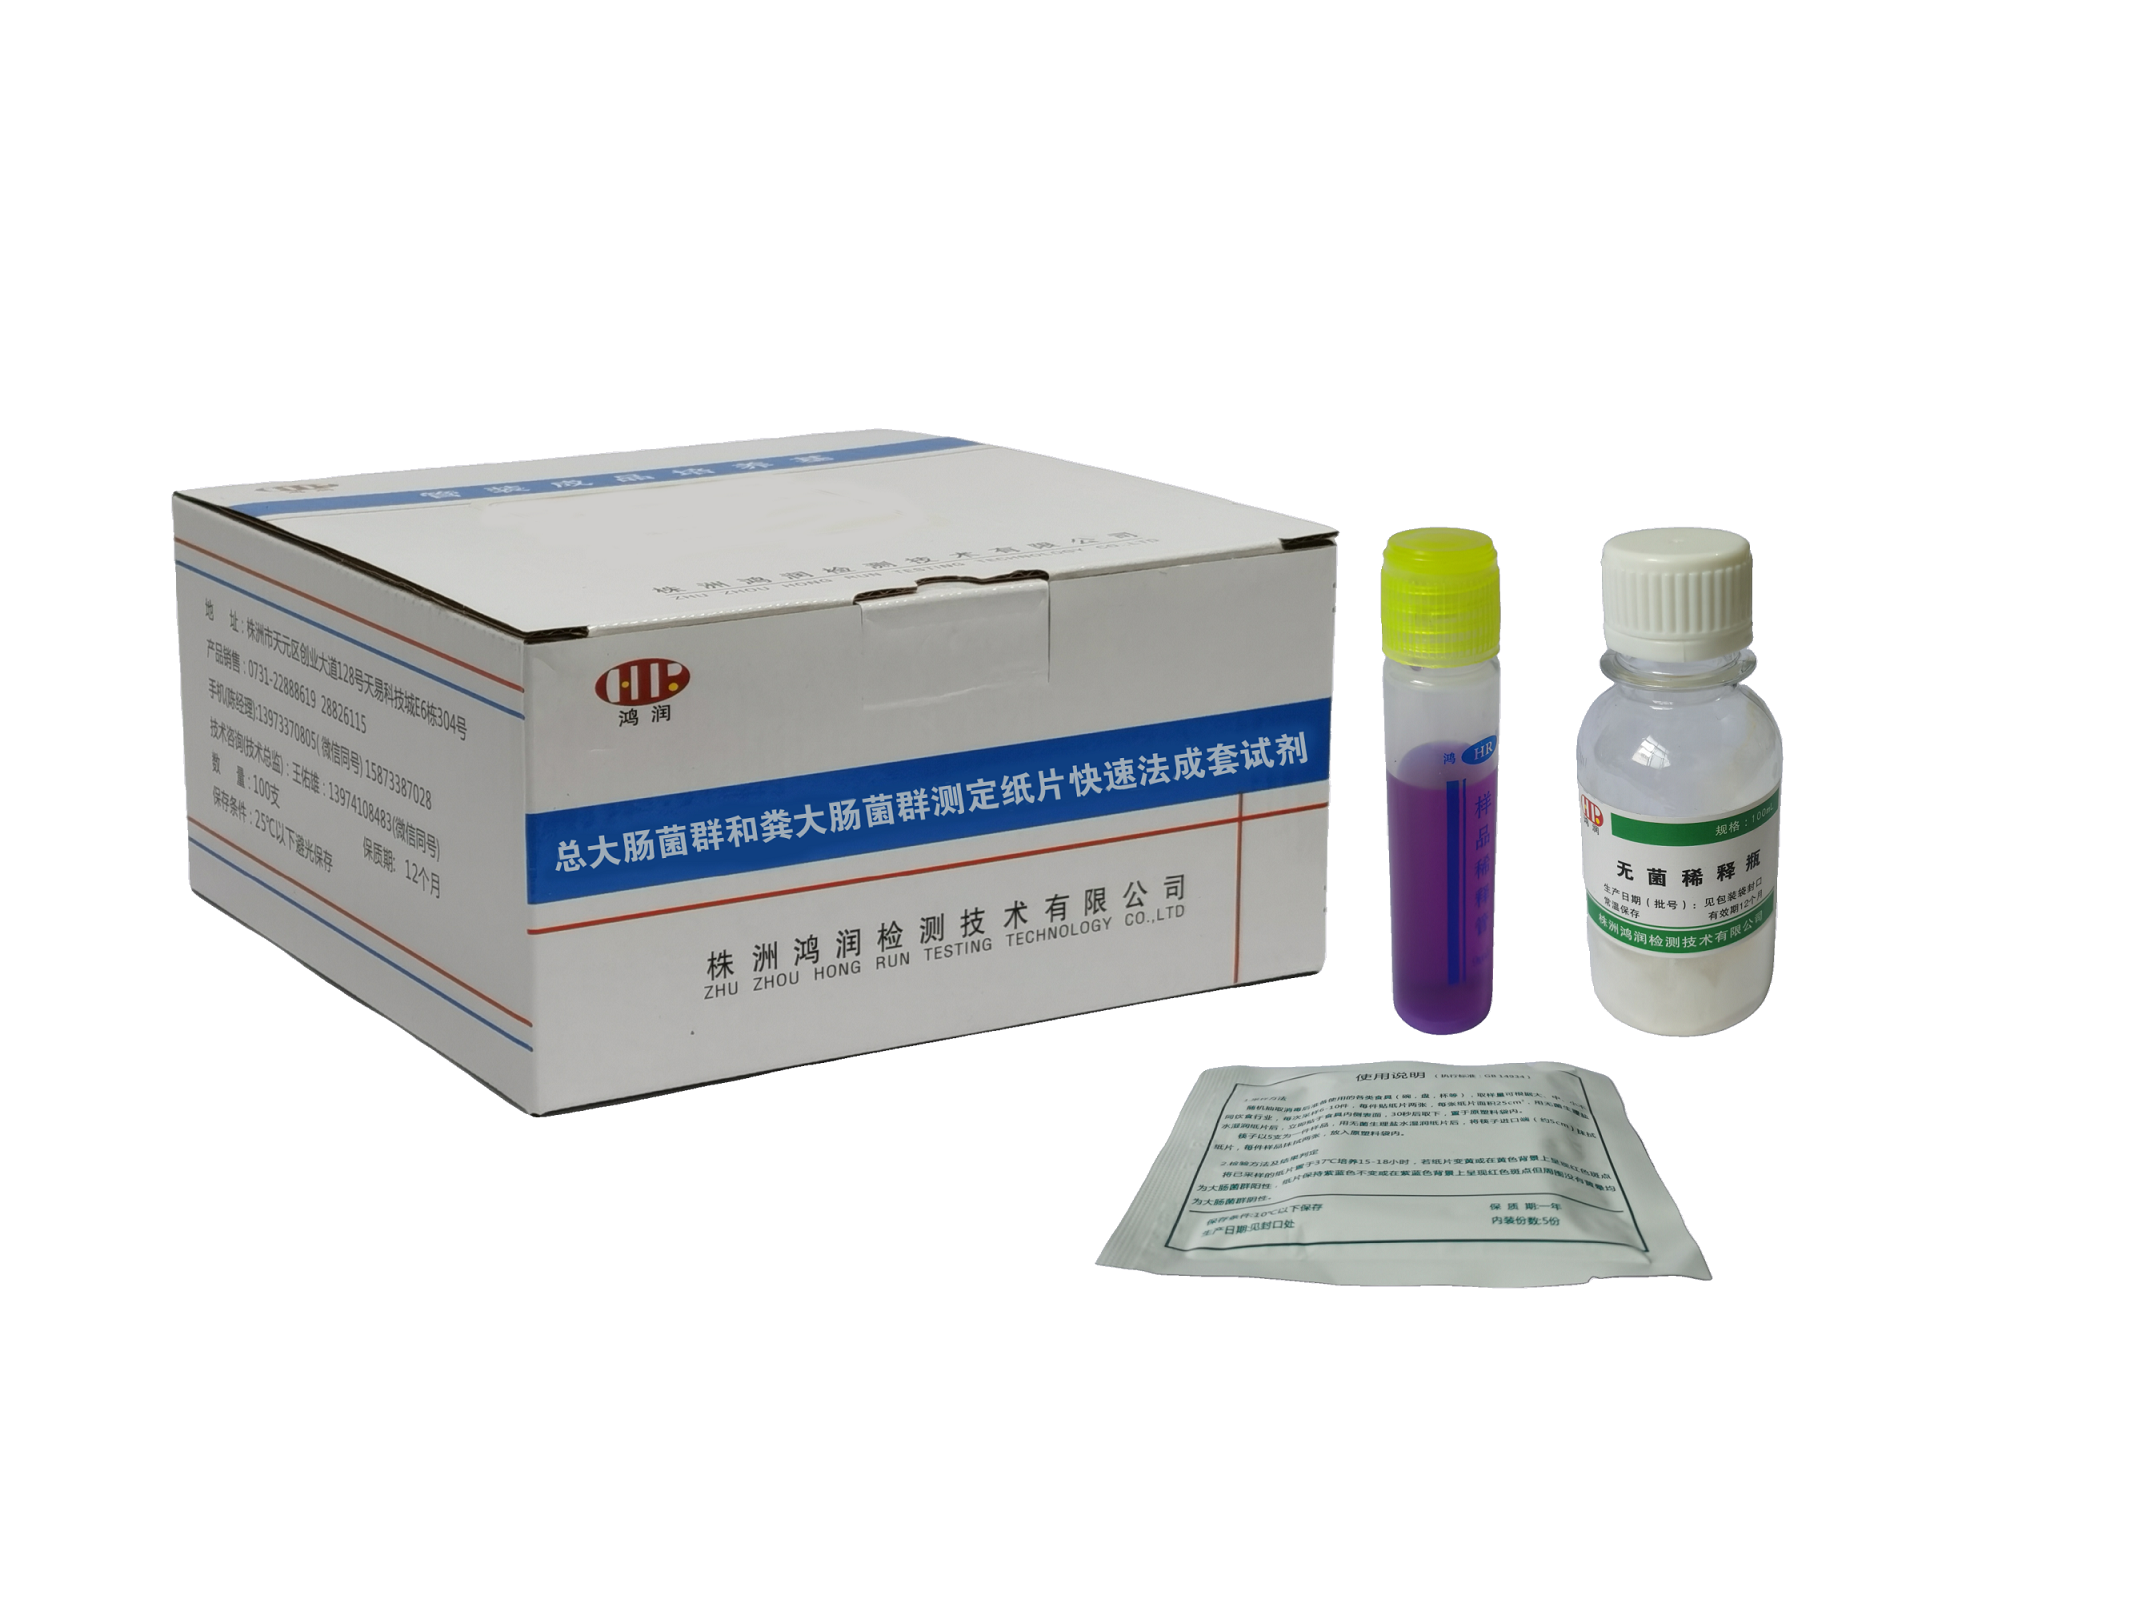 總大腸菌群和糞大腸菌群測定紙片快速法試劑盒